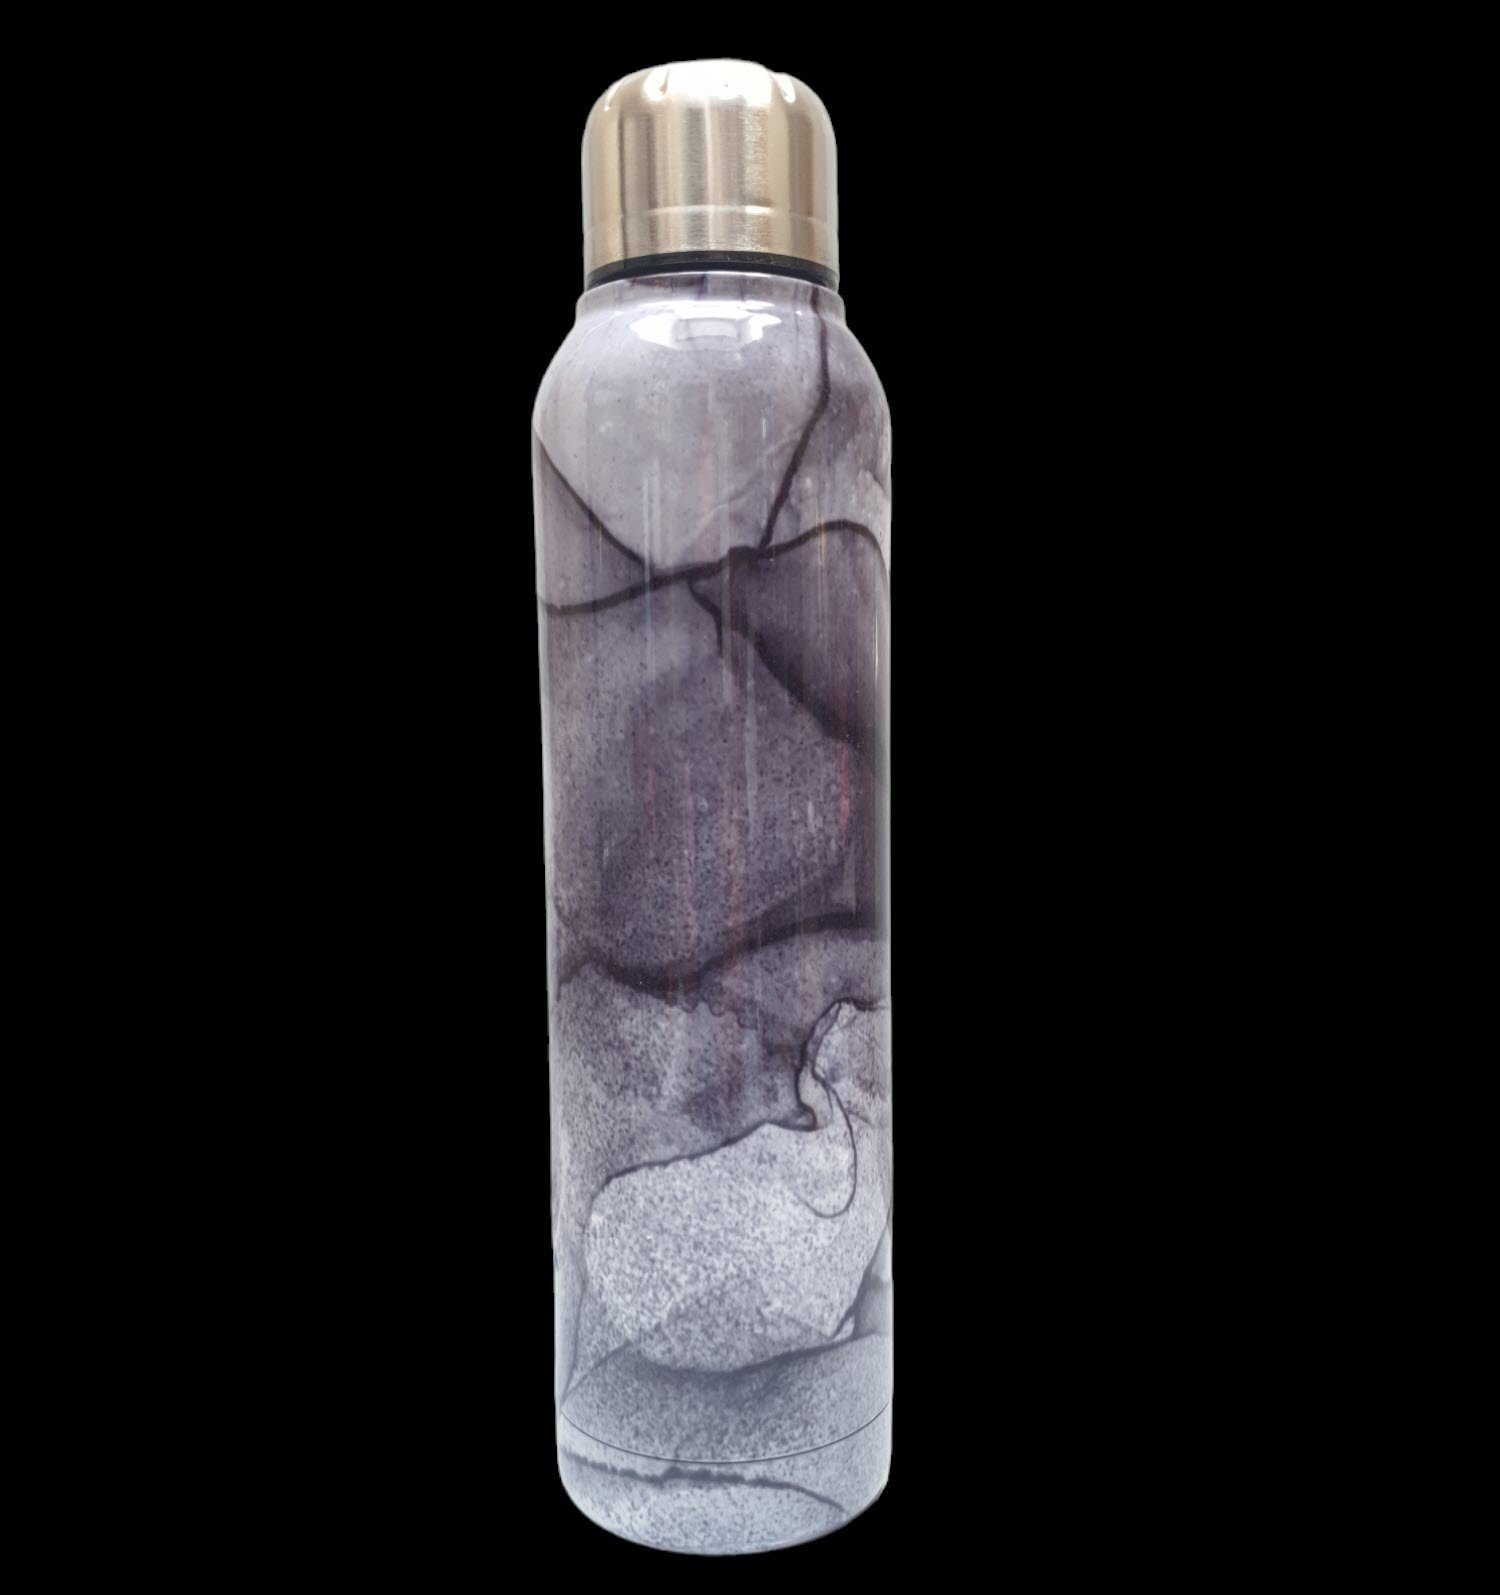 Isolierflasche Isolierflasche 500 Spectrum Edelstahl Sportflasche kalte dunkelgrün Getränke ml